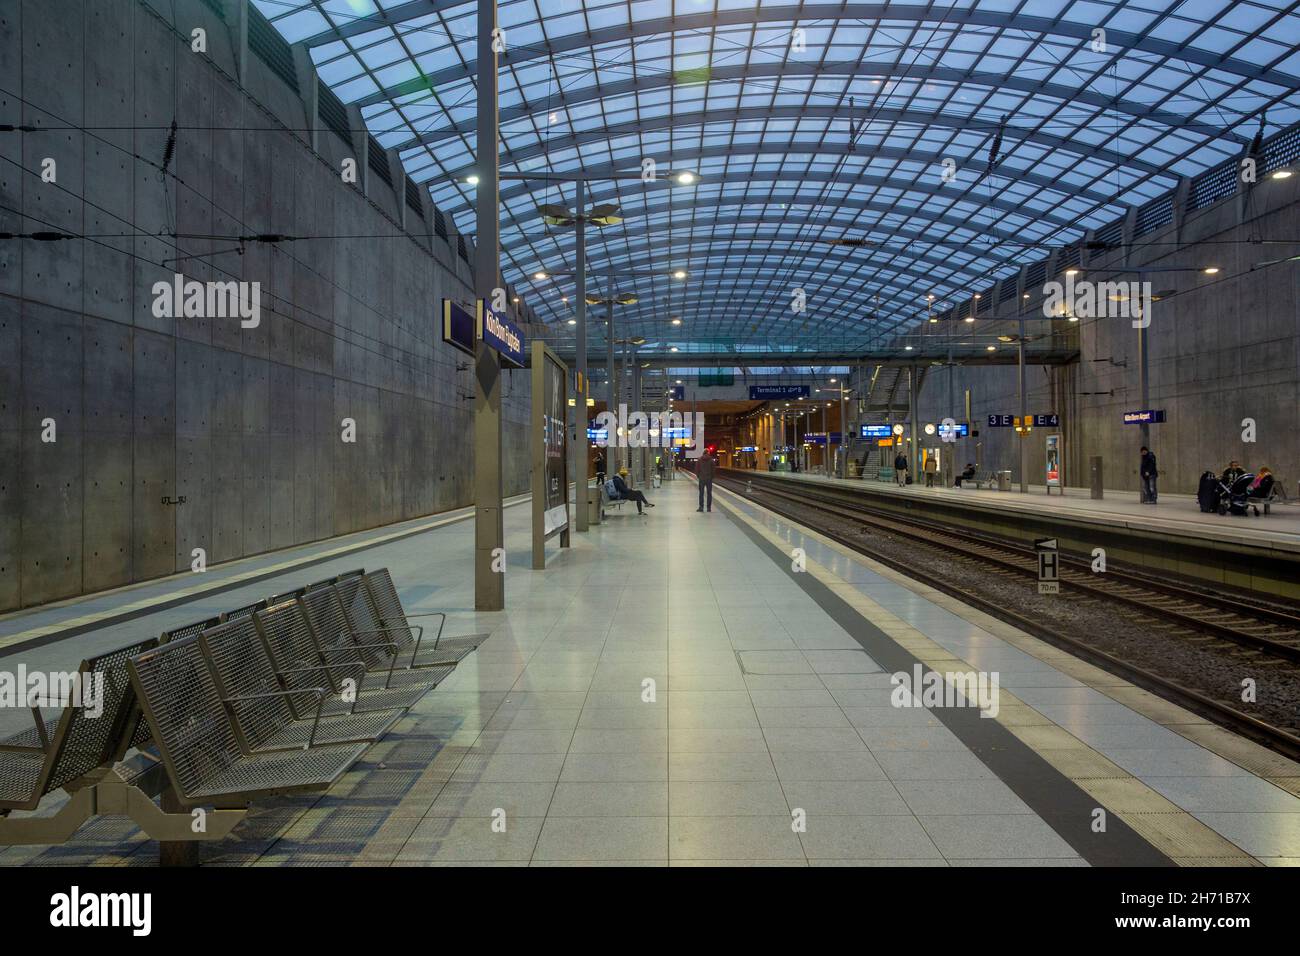 Estación de tren en el aeropuerto de Colonia Bonn (CGN) en Alemania. Foto de stock